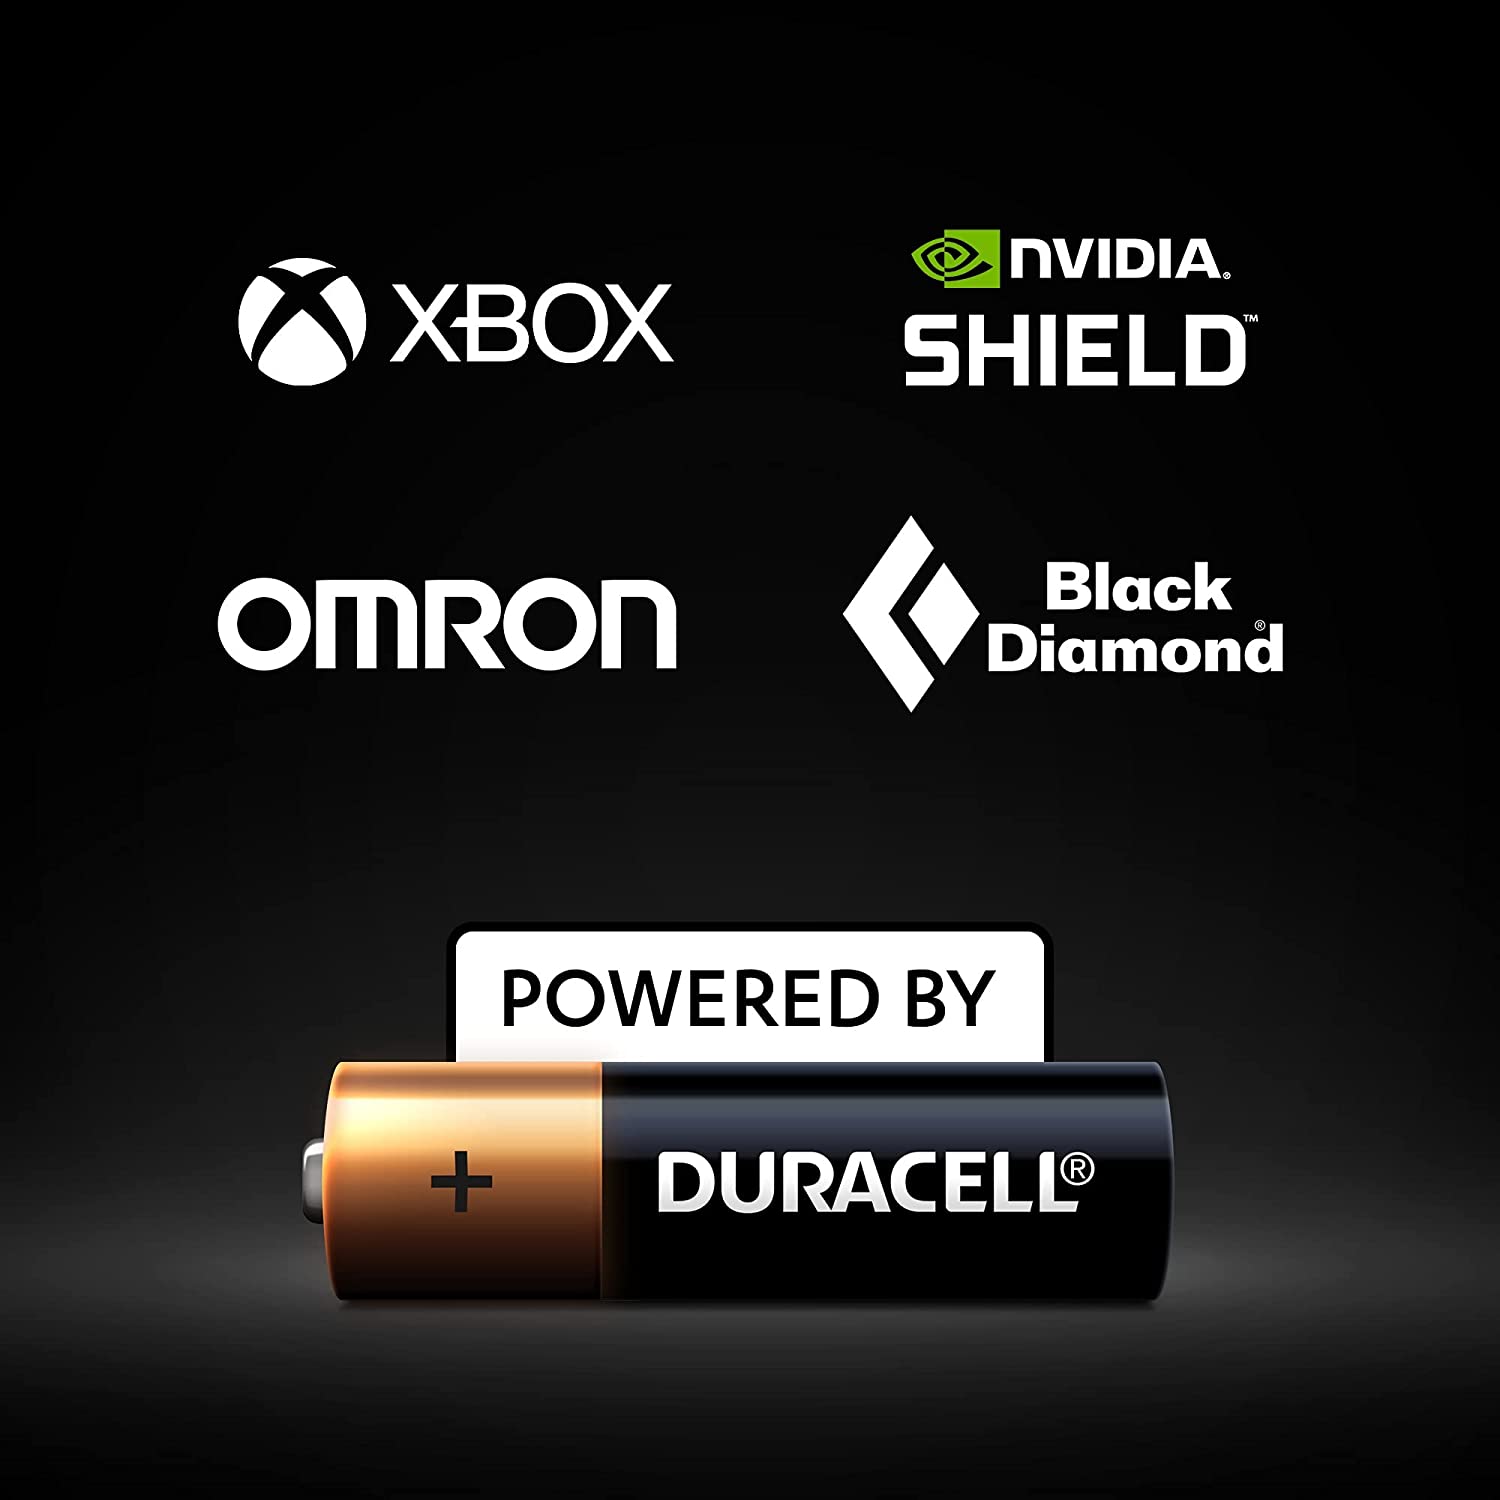 Duracell Plus 6LR61, 9V Block Alkaline Batterie,  MN1604, 4er-Pack